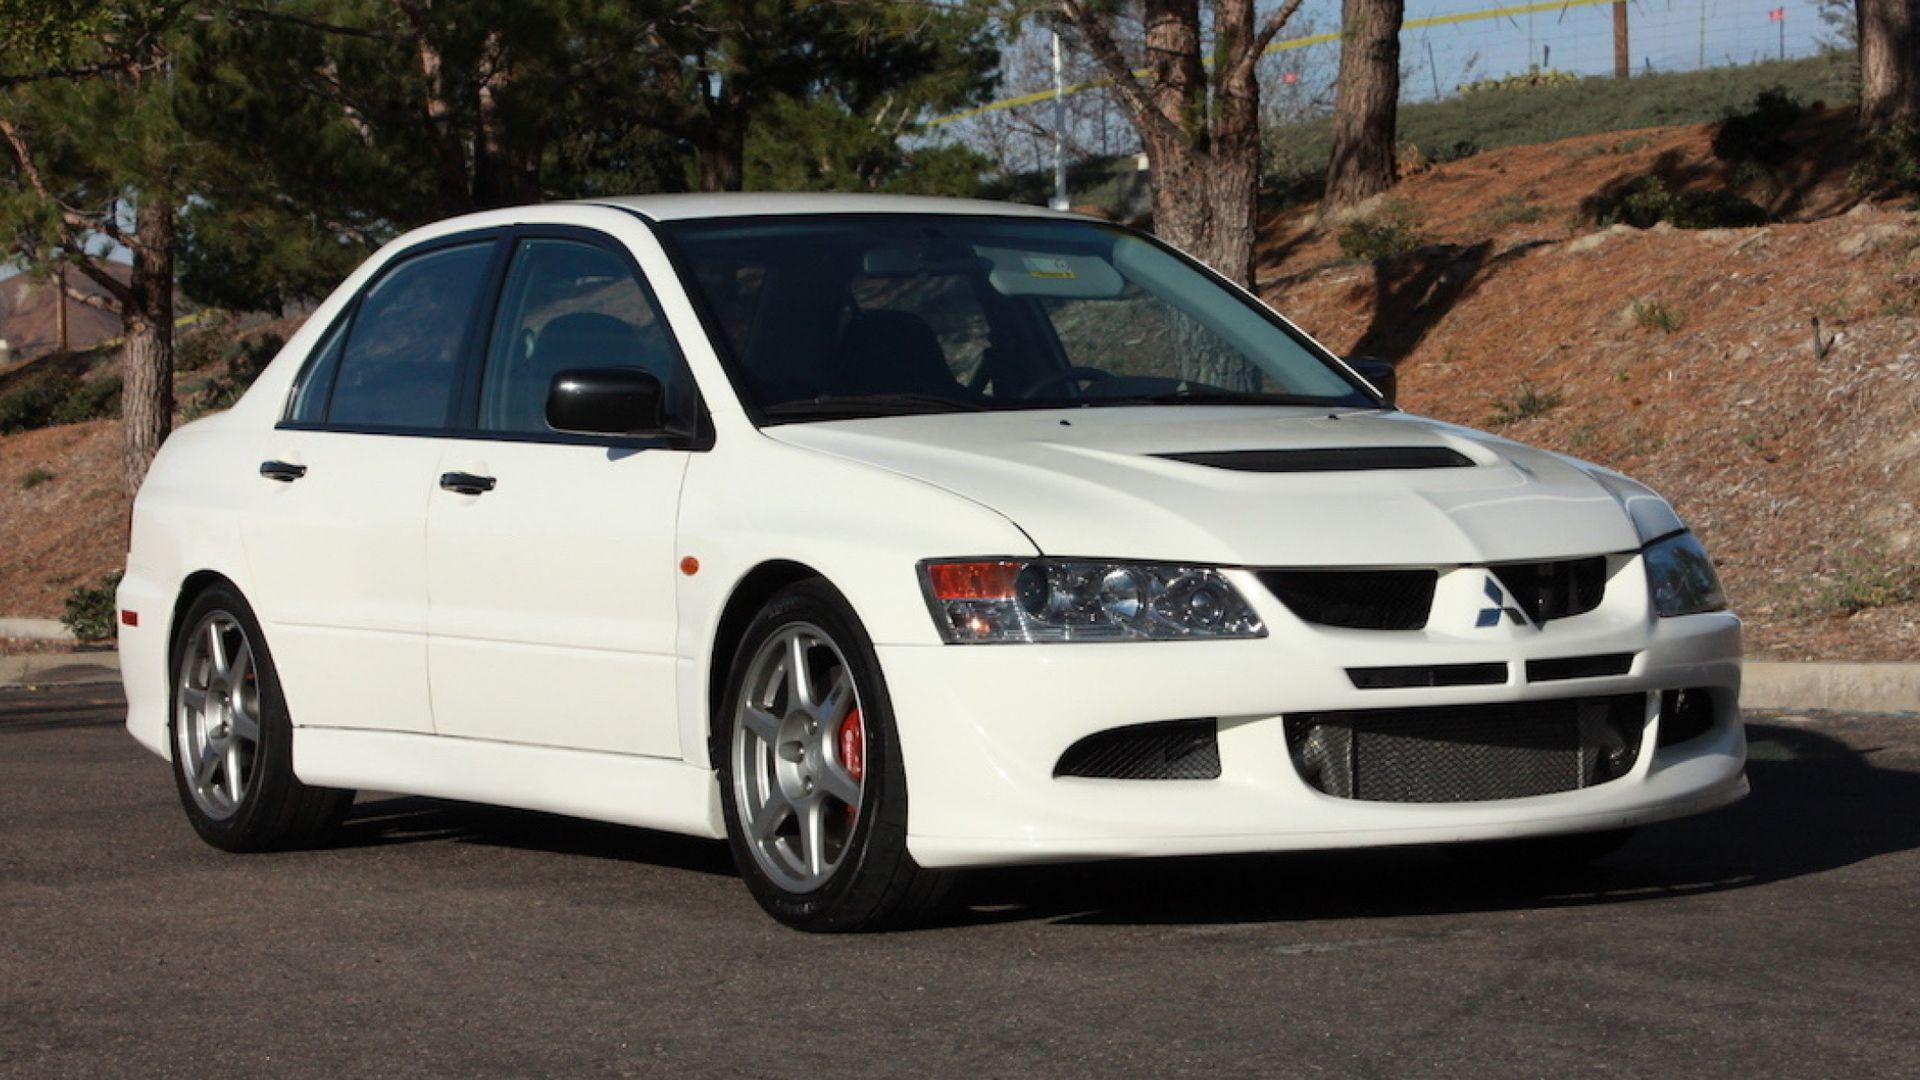 2004 Mitsubishi Lancer Evolution 8 in white posing in parking lot